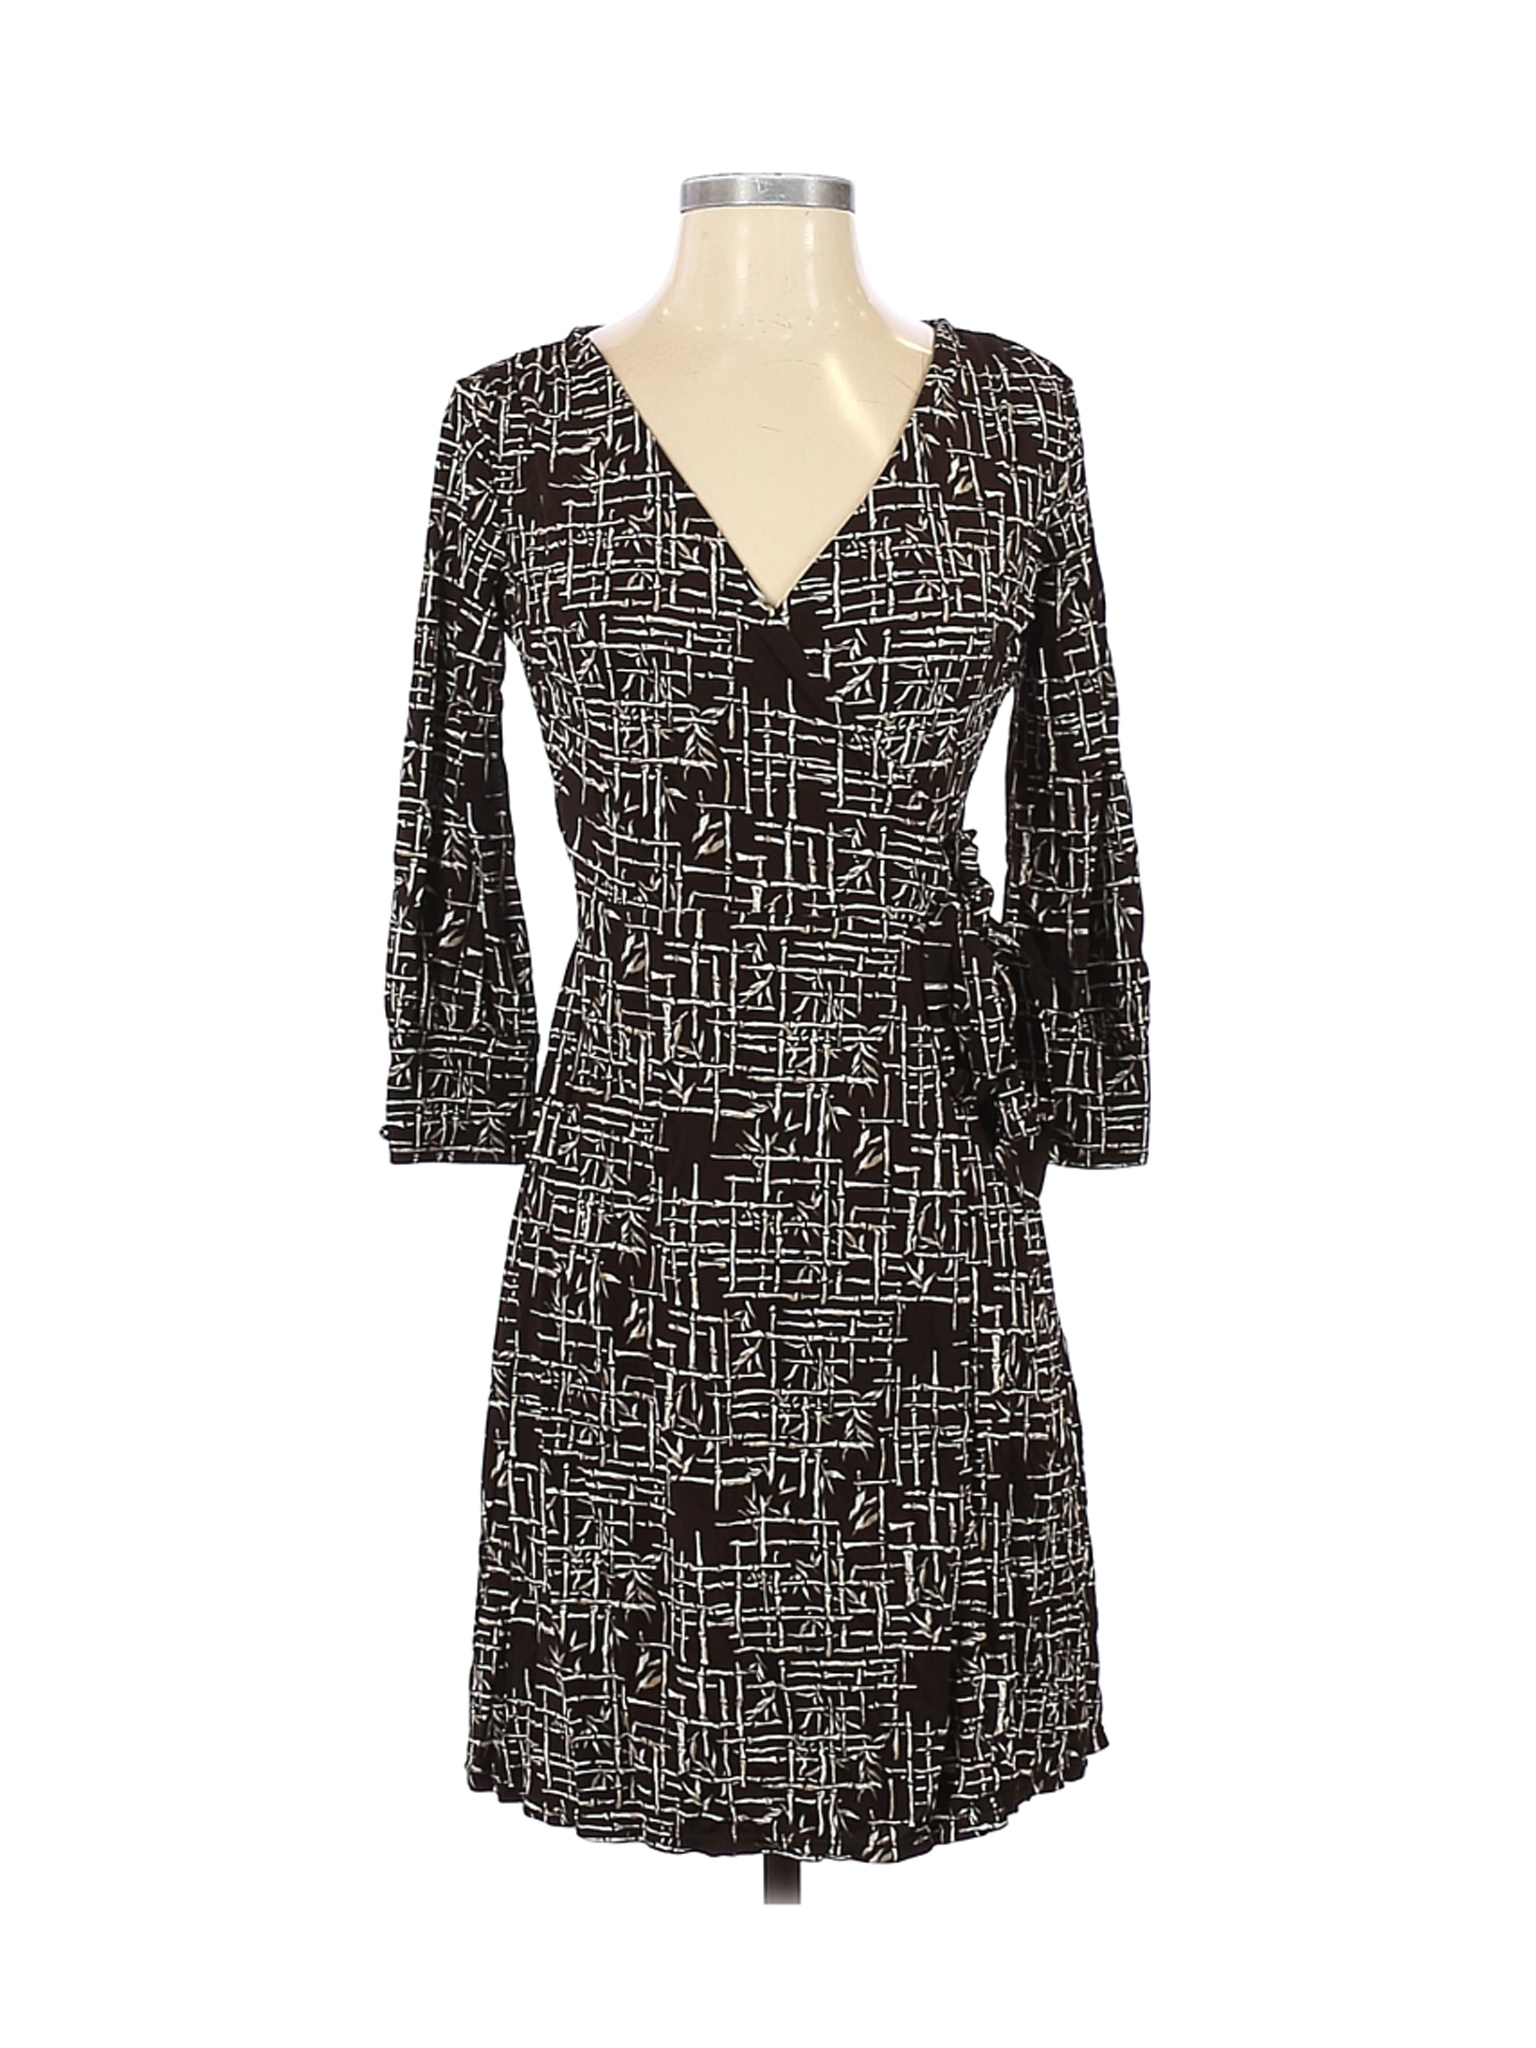 Ann Taylor Women Brown Casual Dress 2 Petites | eBay